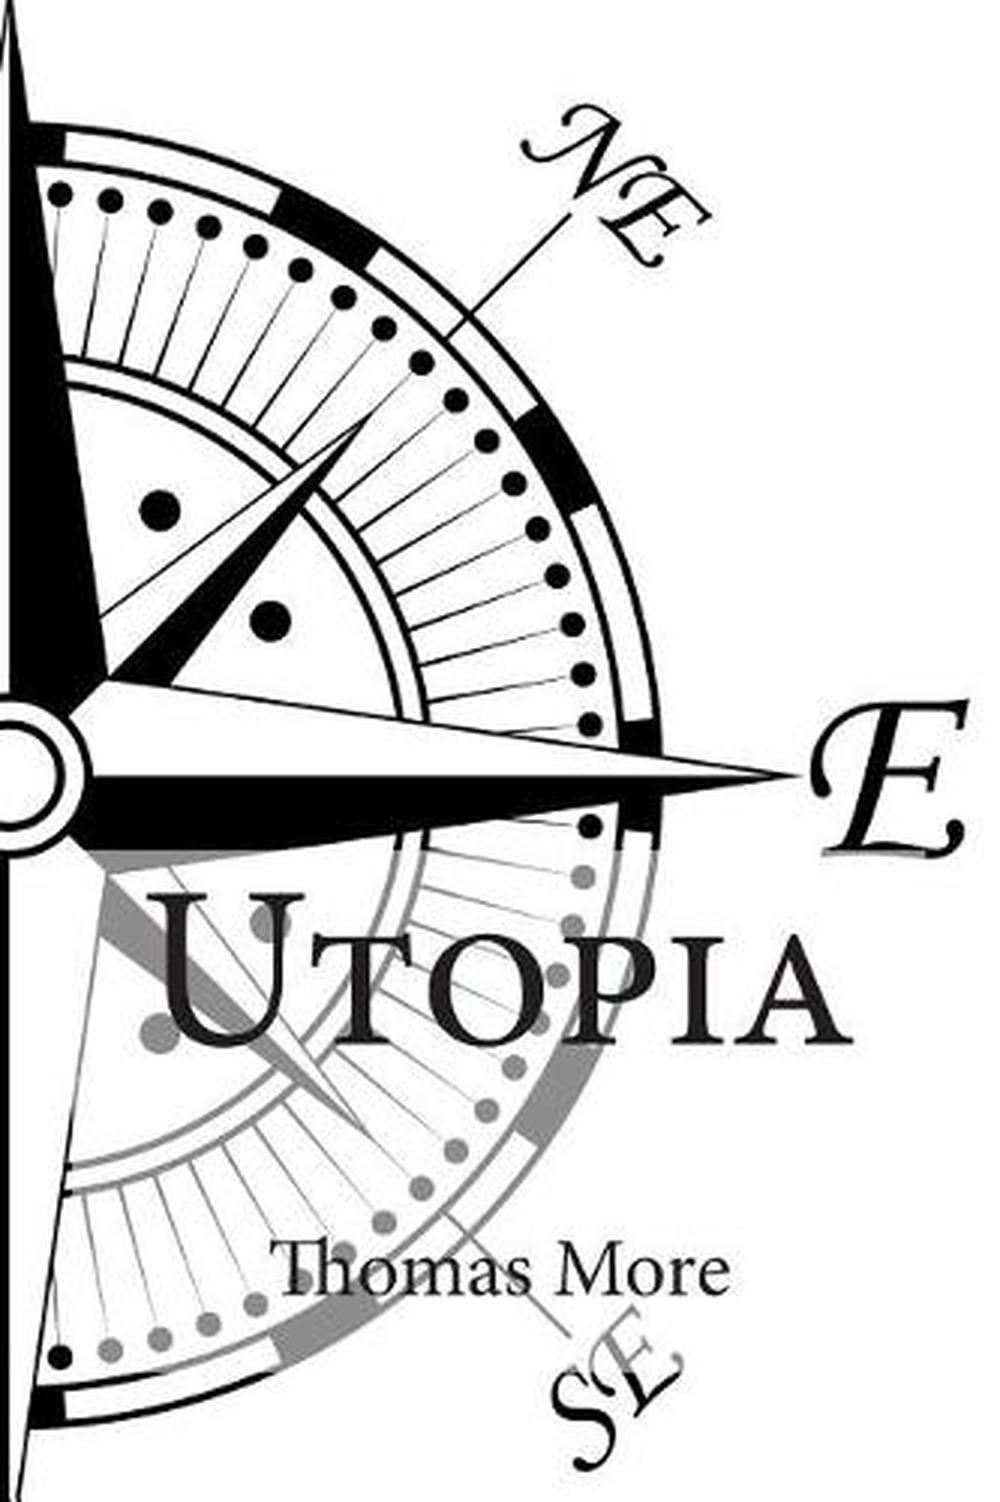 utopia by thomas more